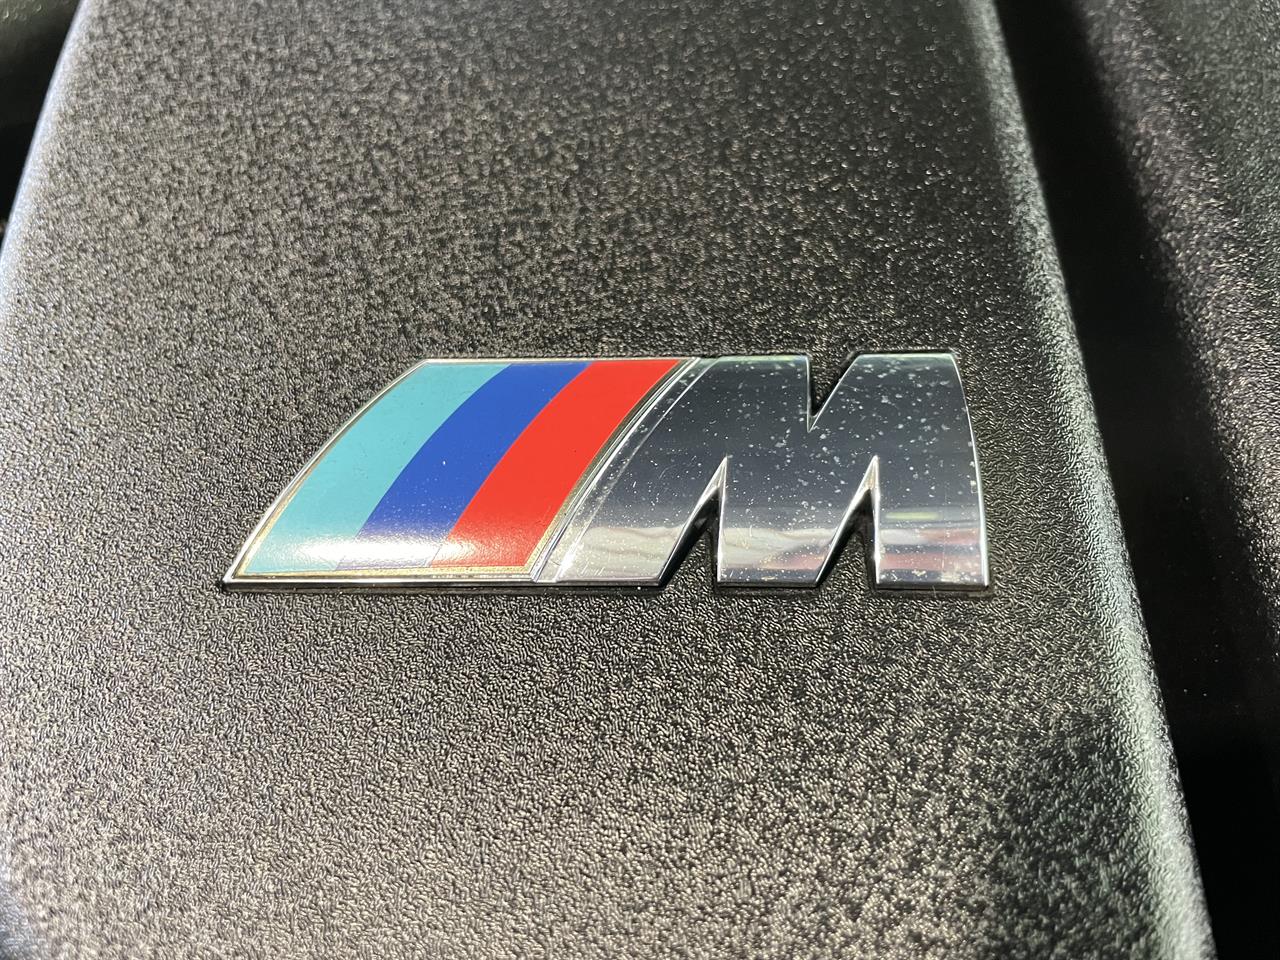 2005 BMW M6